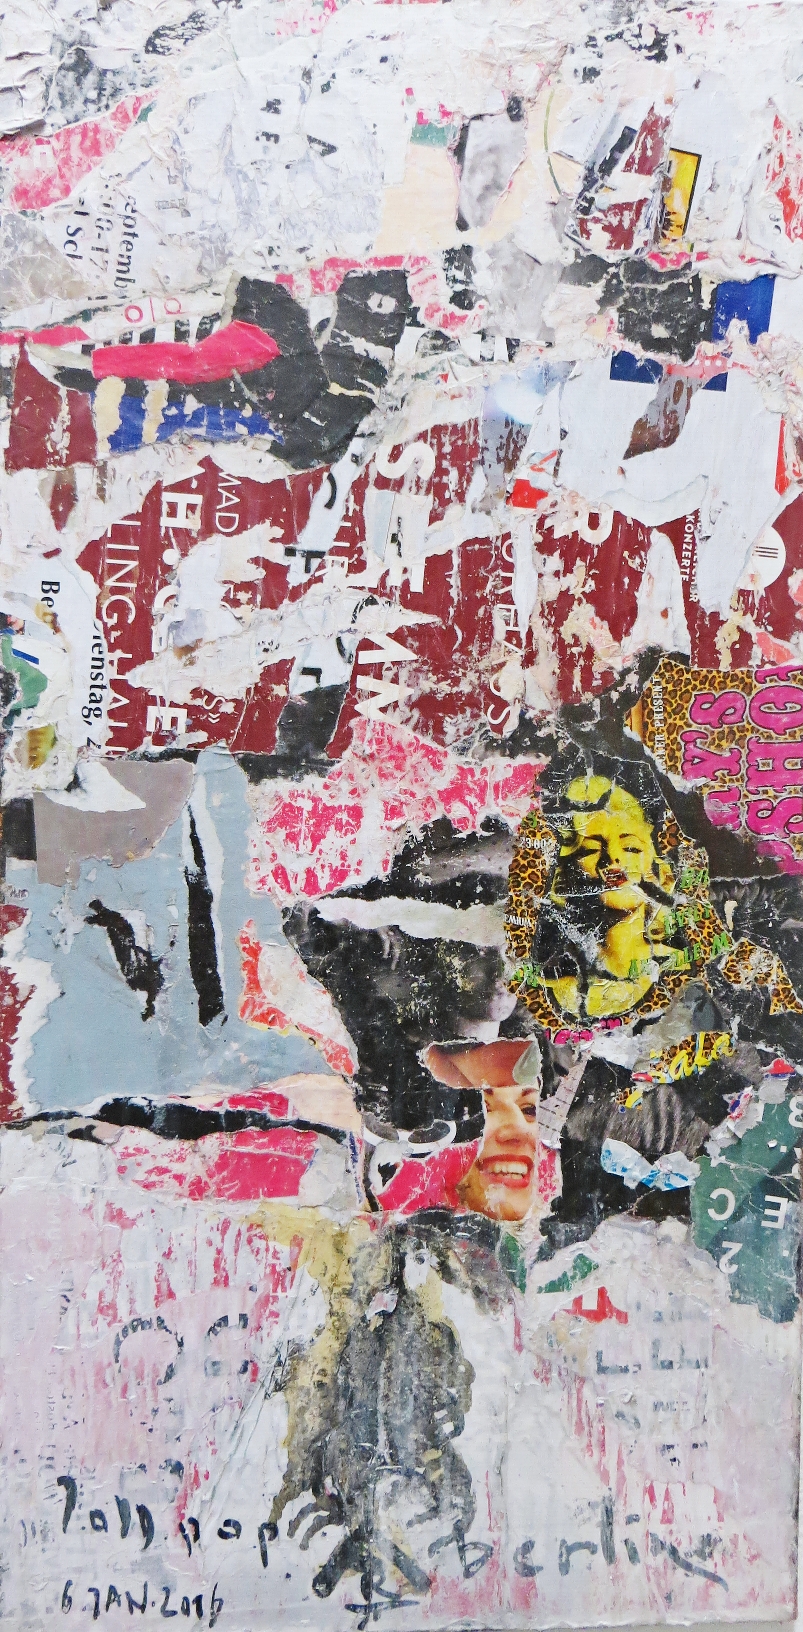 JoDDpopARTberlin 8 

100x50 cm 6..Januar 2016

Decollage / Collage von Plakatabrissen in der Kastanienallee in Berlin Prenzlauer Berg